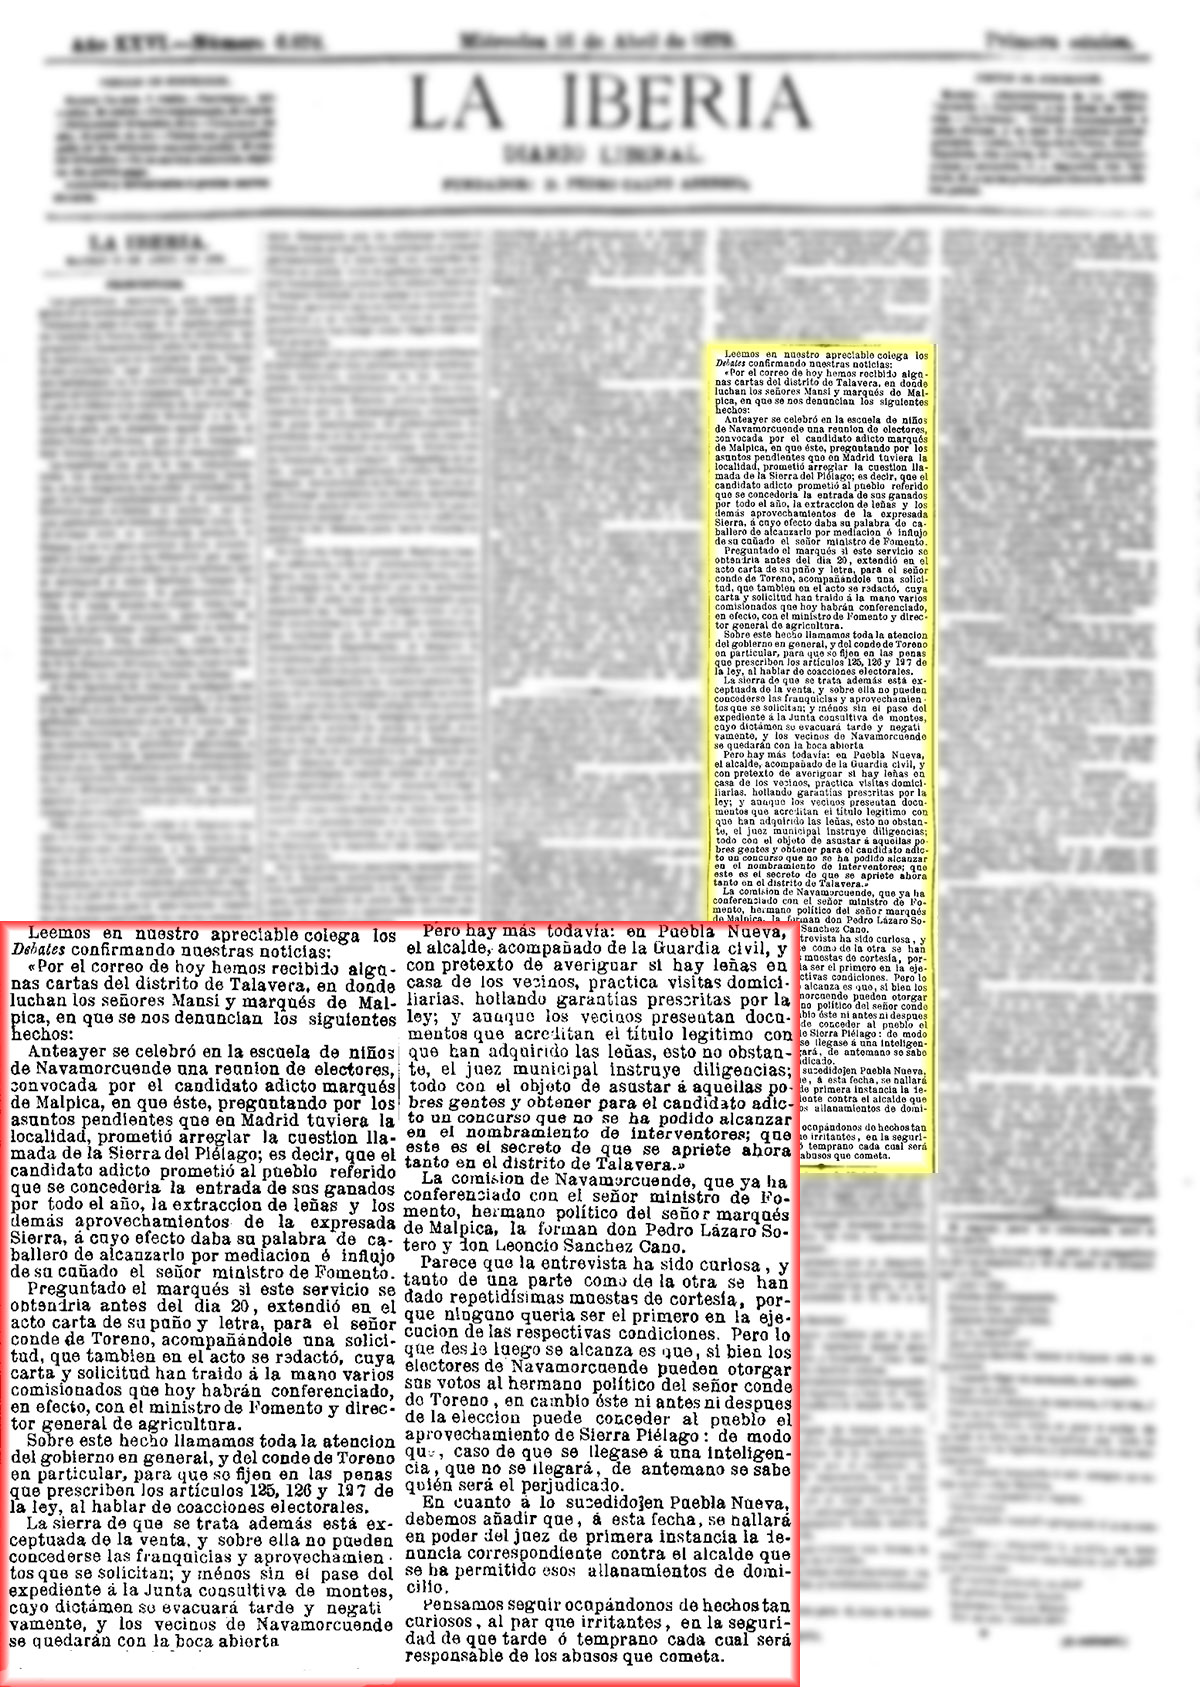 La Iberia 6/4/1879, página 1, de nuncia de prácticas electorales poco éticas.